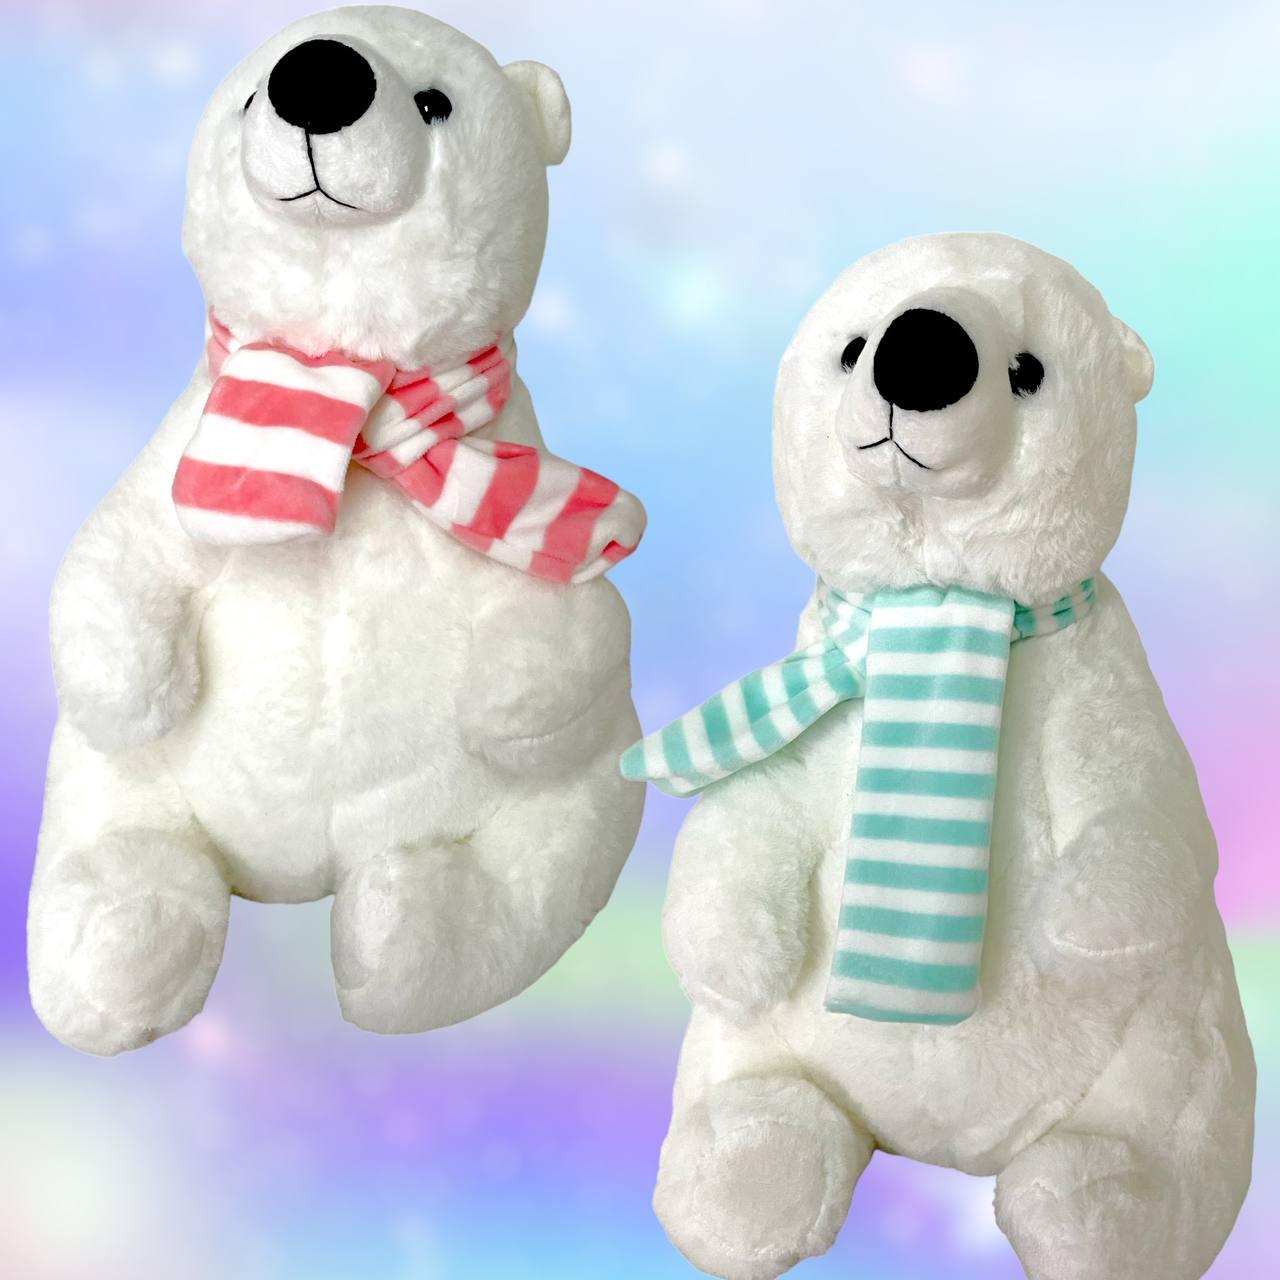 25см Белый медведь с шарфиком (3 цвета)